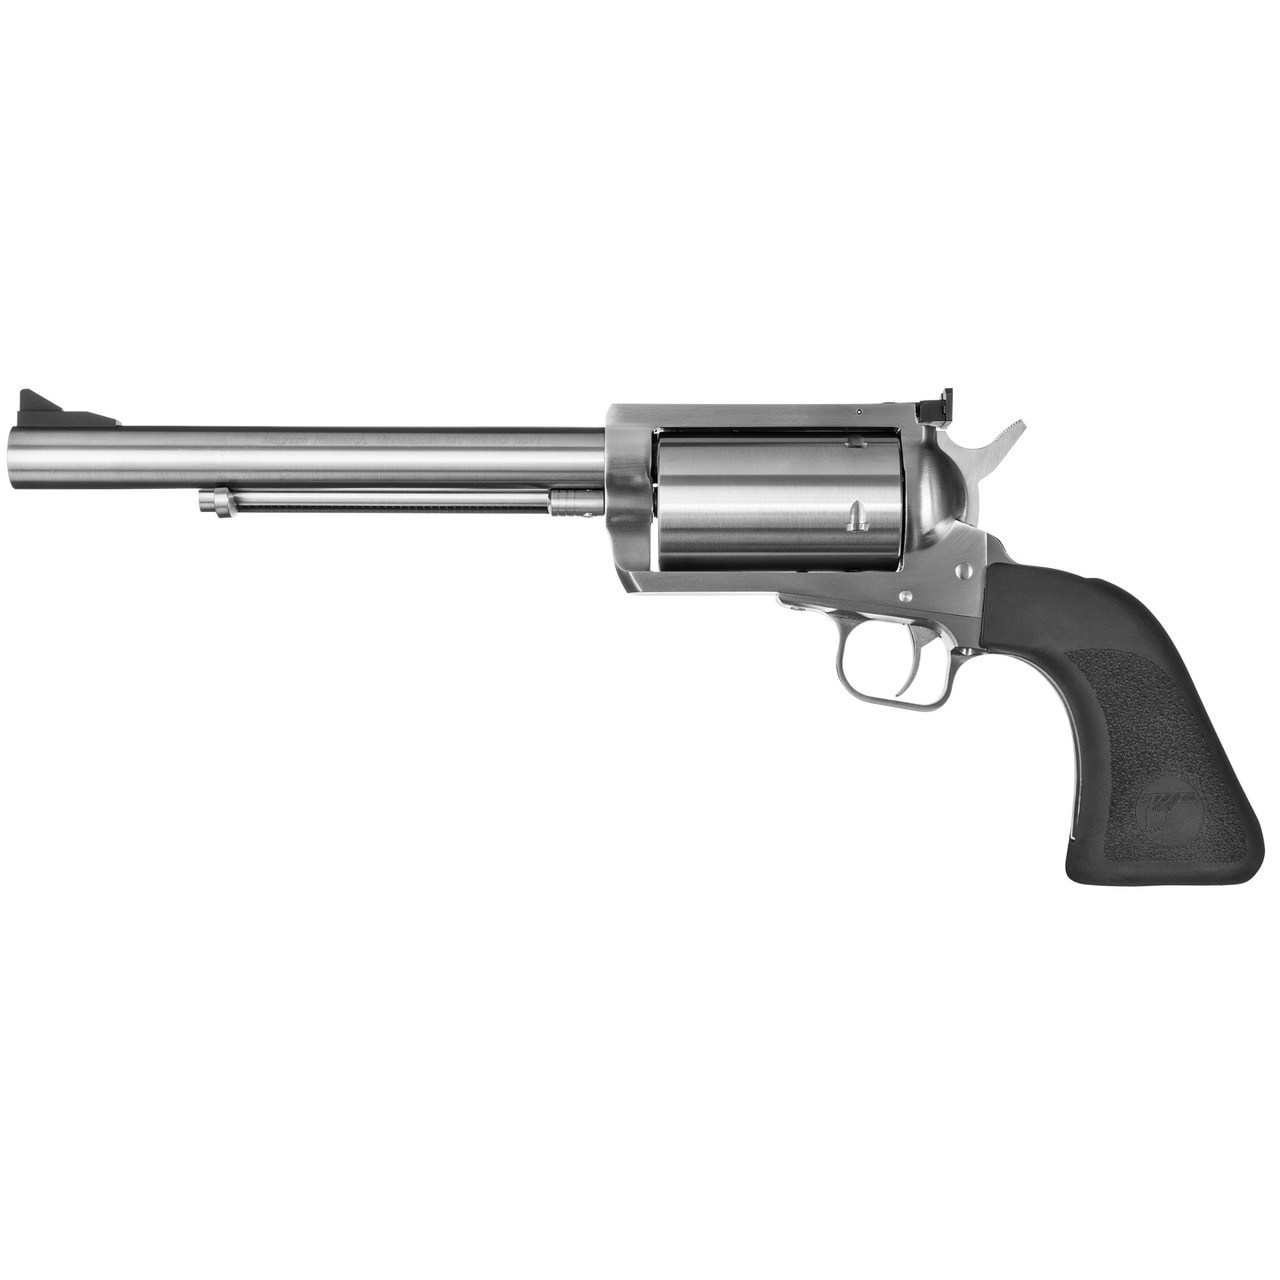 MR BFR 357 7.5"" SS 6RD - Handguns